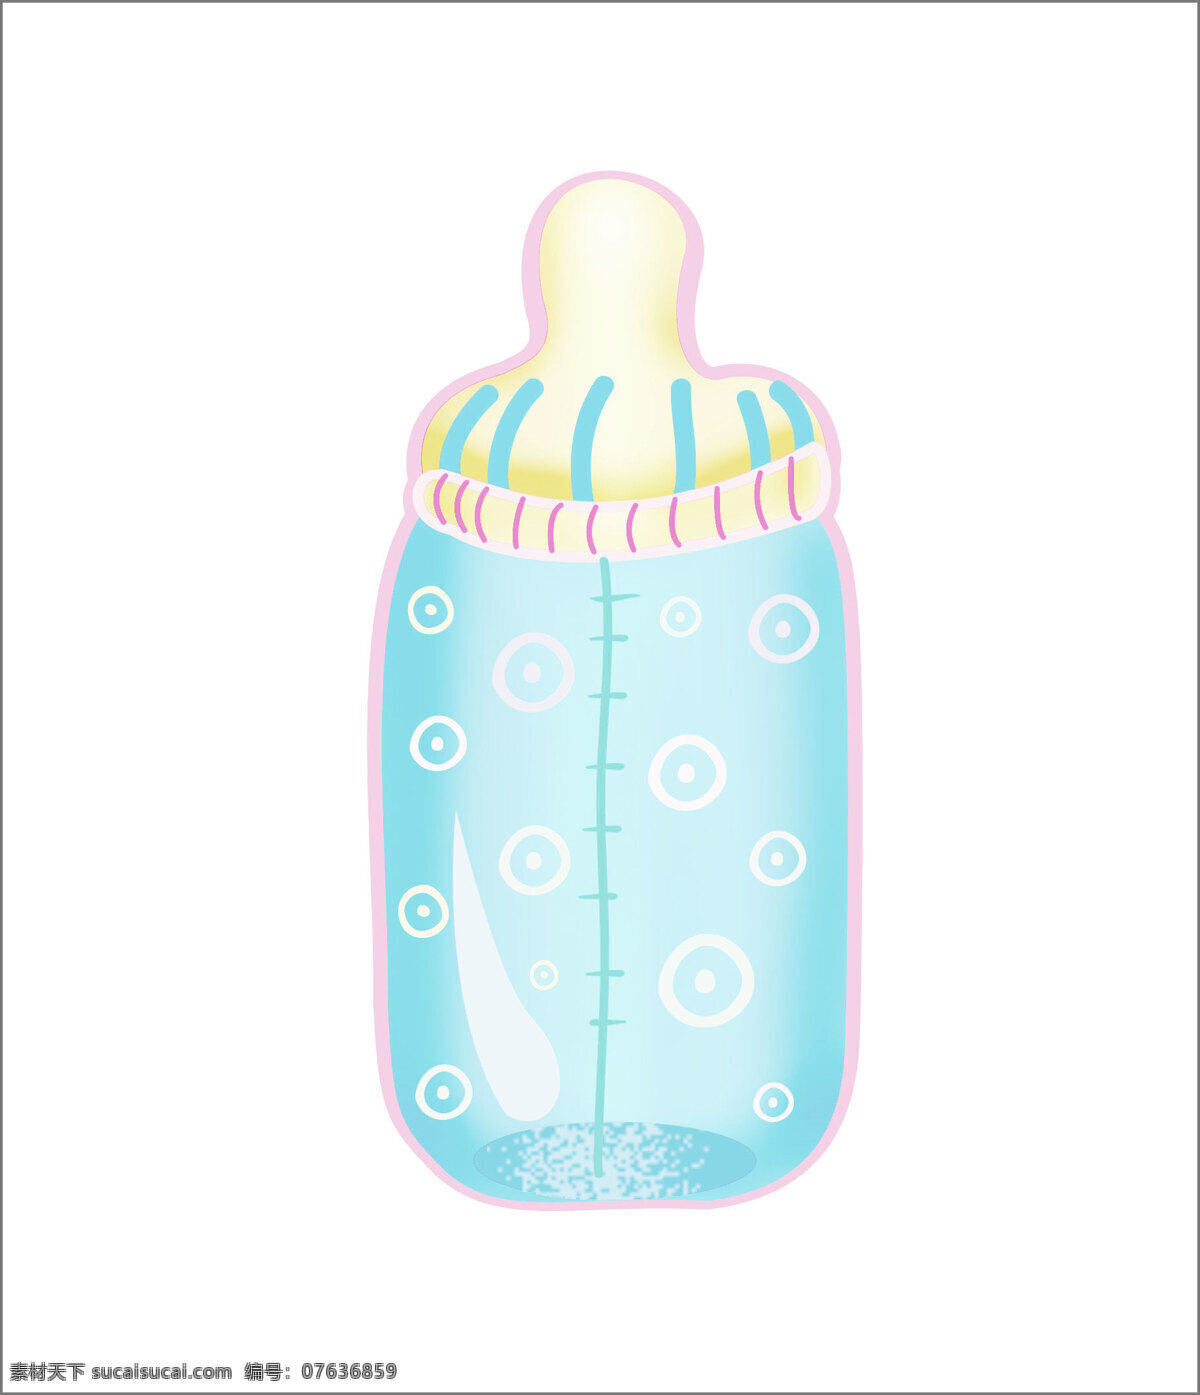 婴儿物品 奶瓶 婴儿 动漫动画